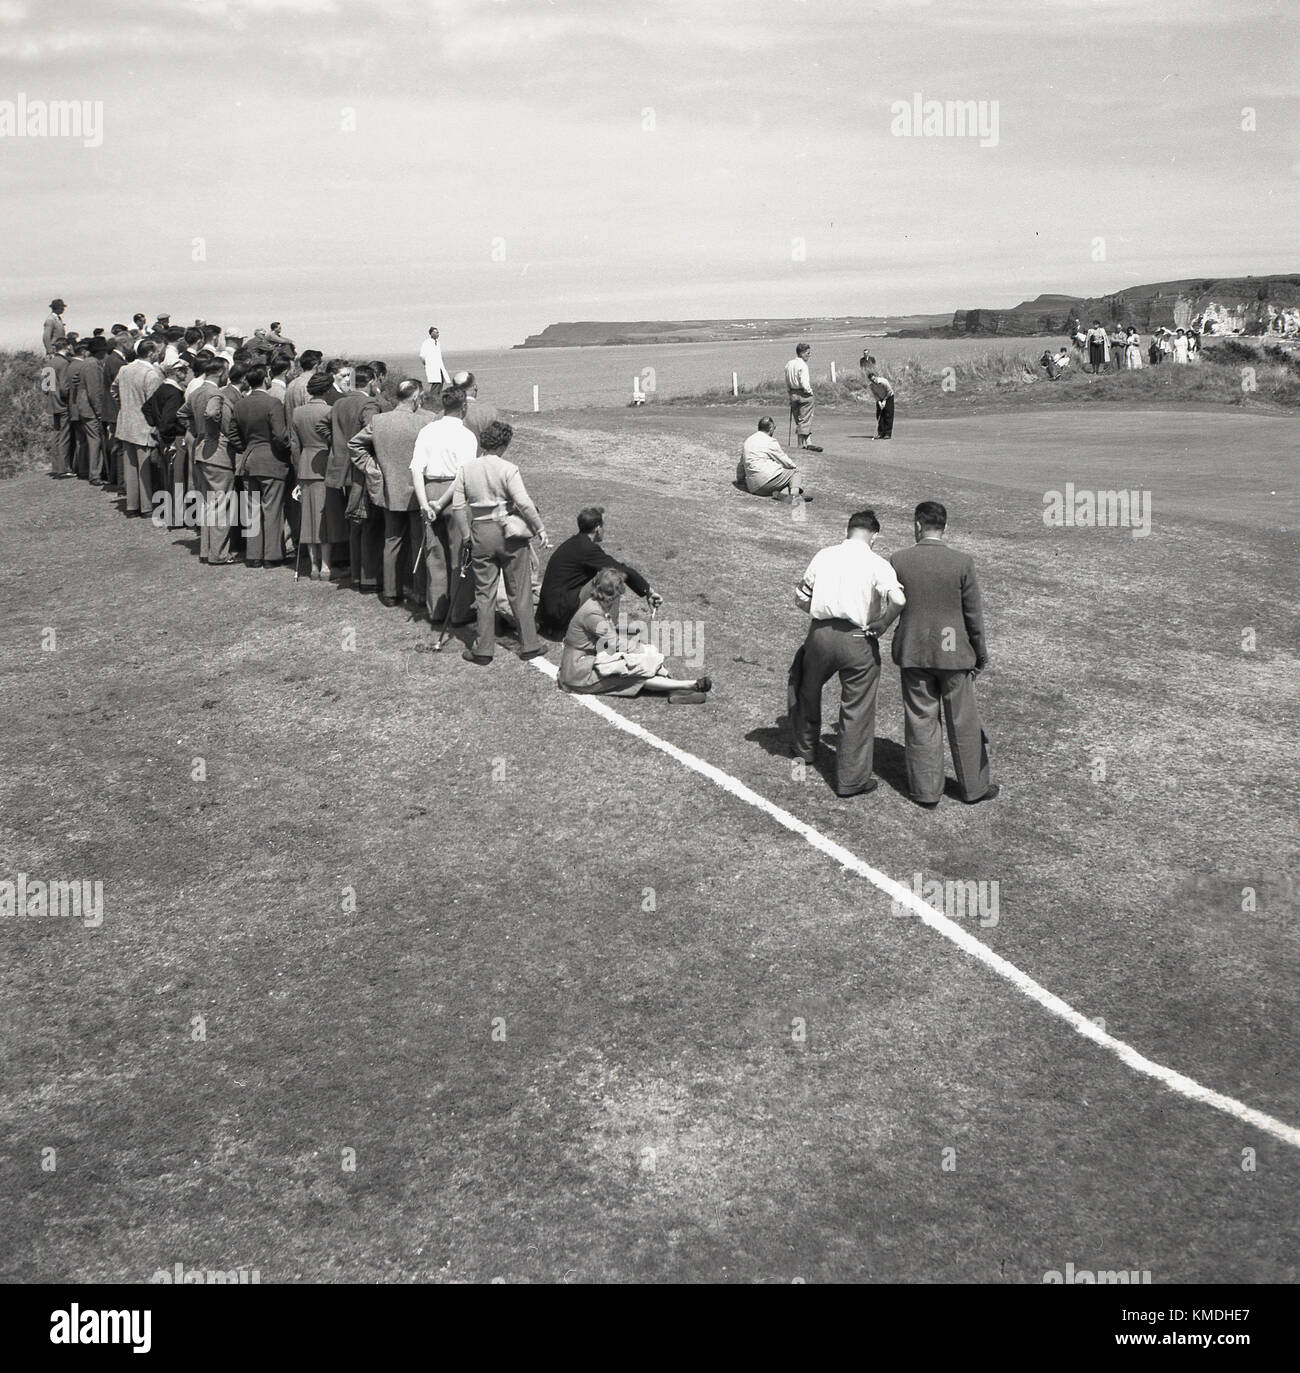 1951, histórico, en el Royal Portrush Golf Club en la costa de Antrim, Irlanda del Norte, se celebra el Campeonato Abierto Británico - ahora conocido simplemente como el Campeonato Abierto - con espectadores reunidos en torno a uno de los verdes costeros para ver a los golfistas jugar. Ahora conocido simplemente como 'The Open', este evento fue ganado por el golfista inglés Max Faulkner, su única victoria importante. Foto de stock